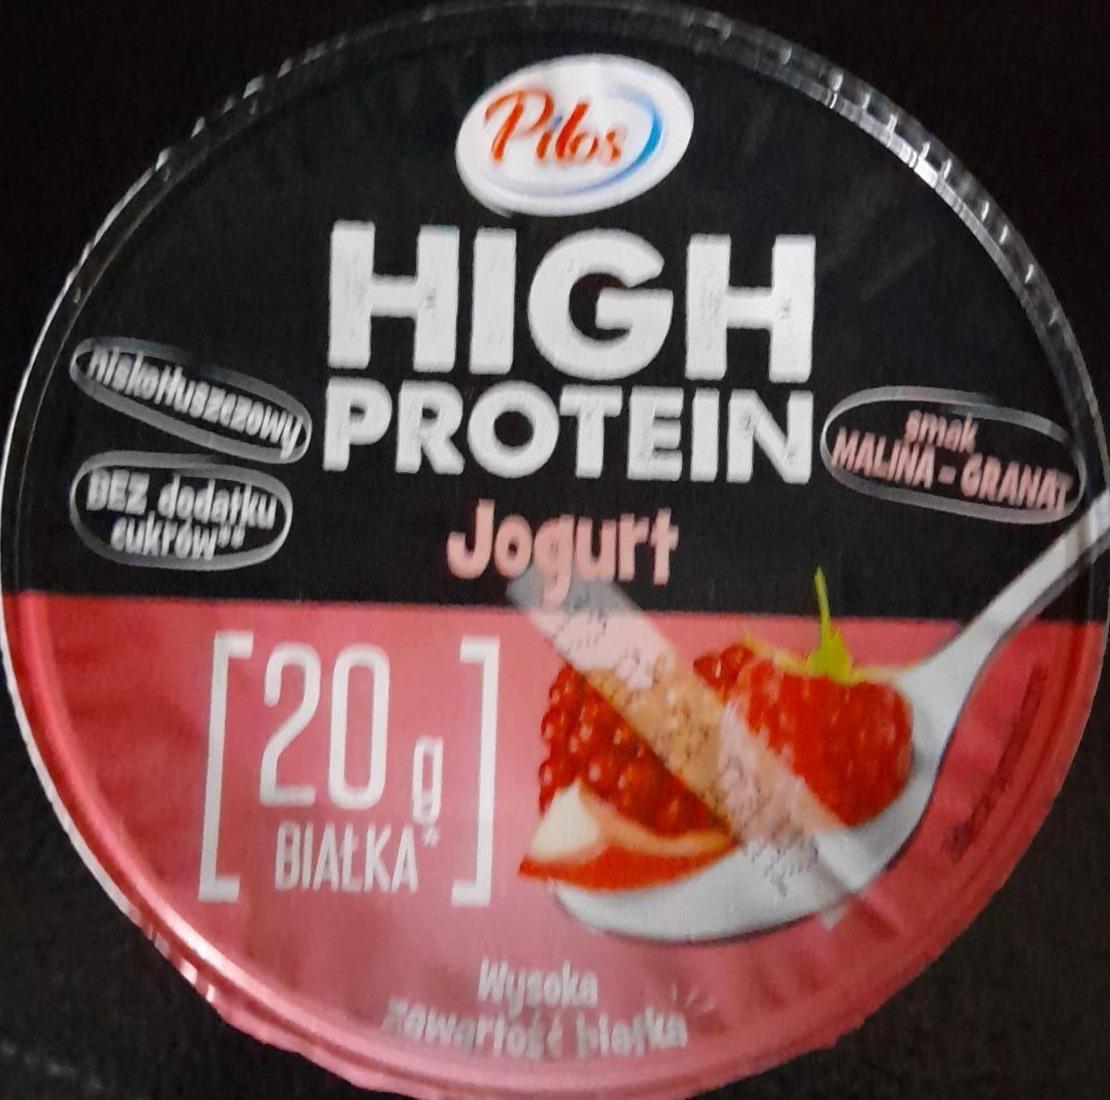 Zdjęcia - Jogurt proteinowy o smaku maliny i granatu Pilos